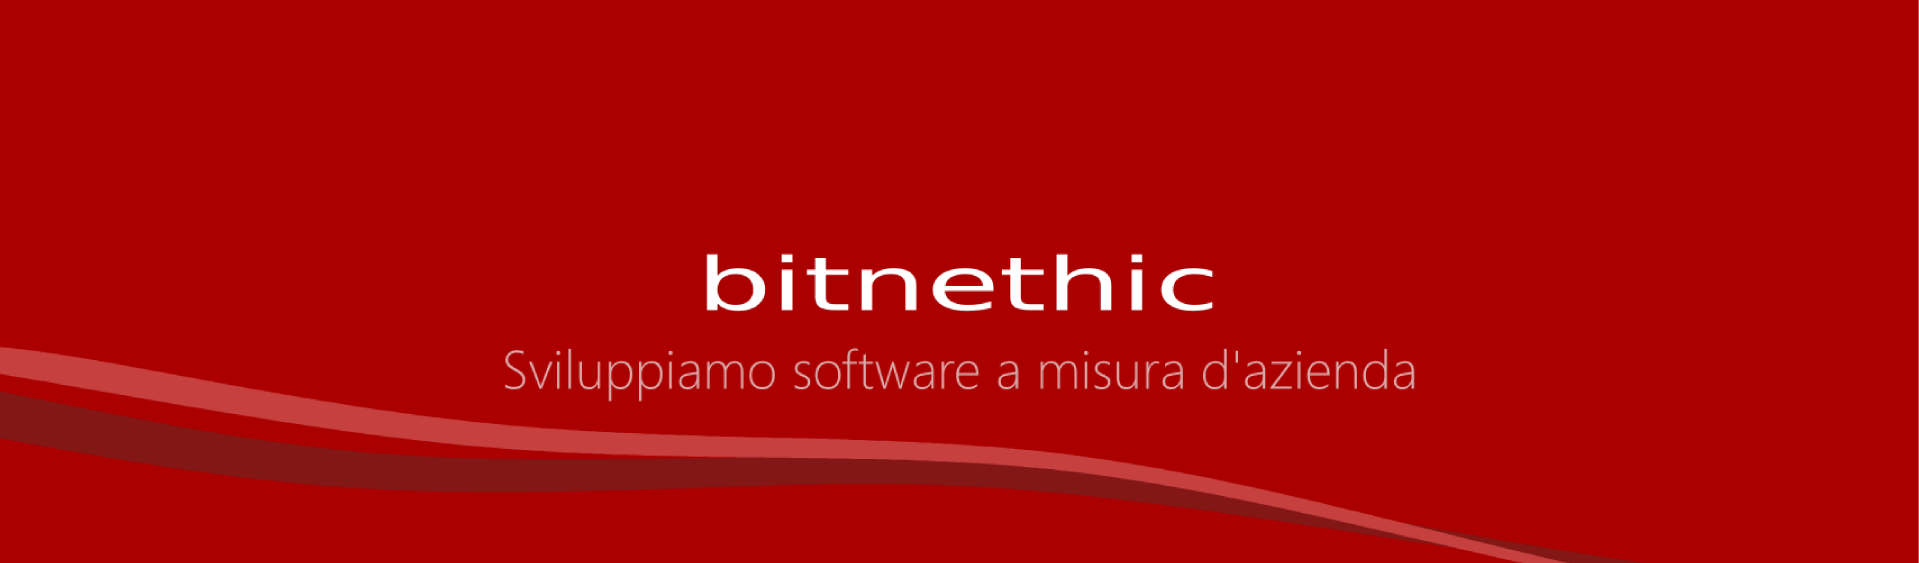 Bitnethic - Sviluppiamo software a misura d'azienda